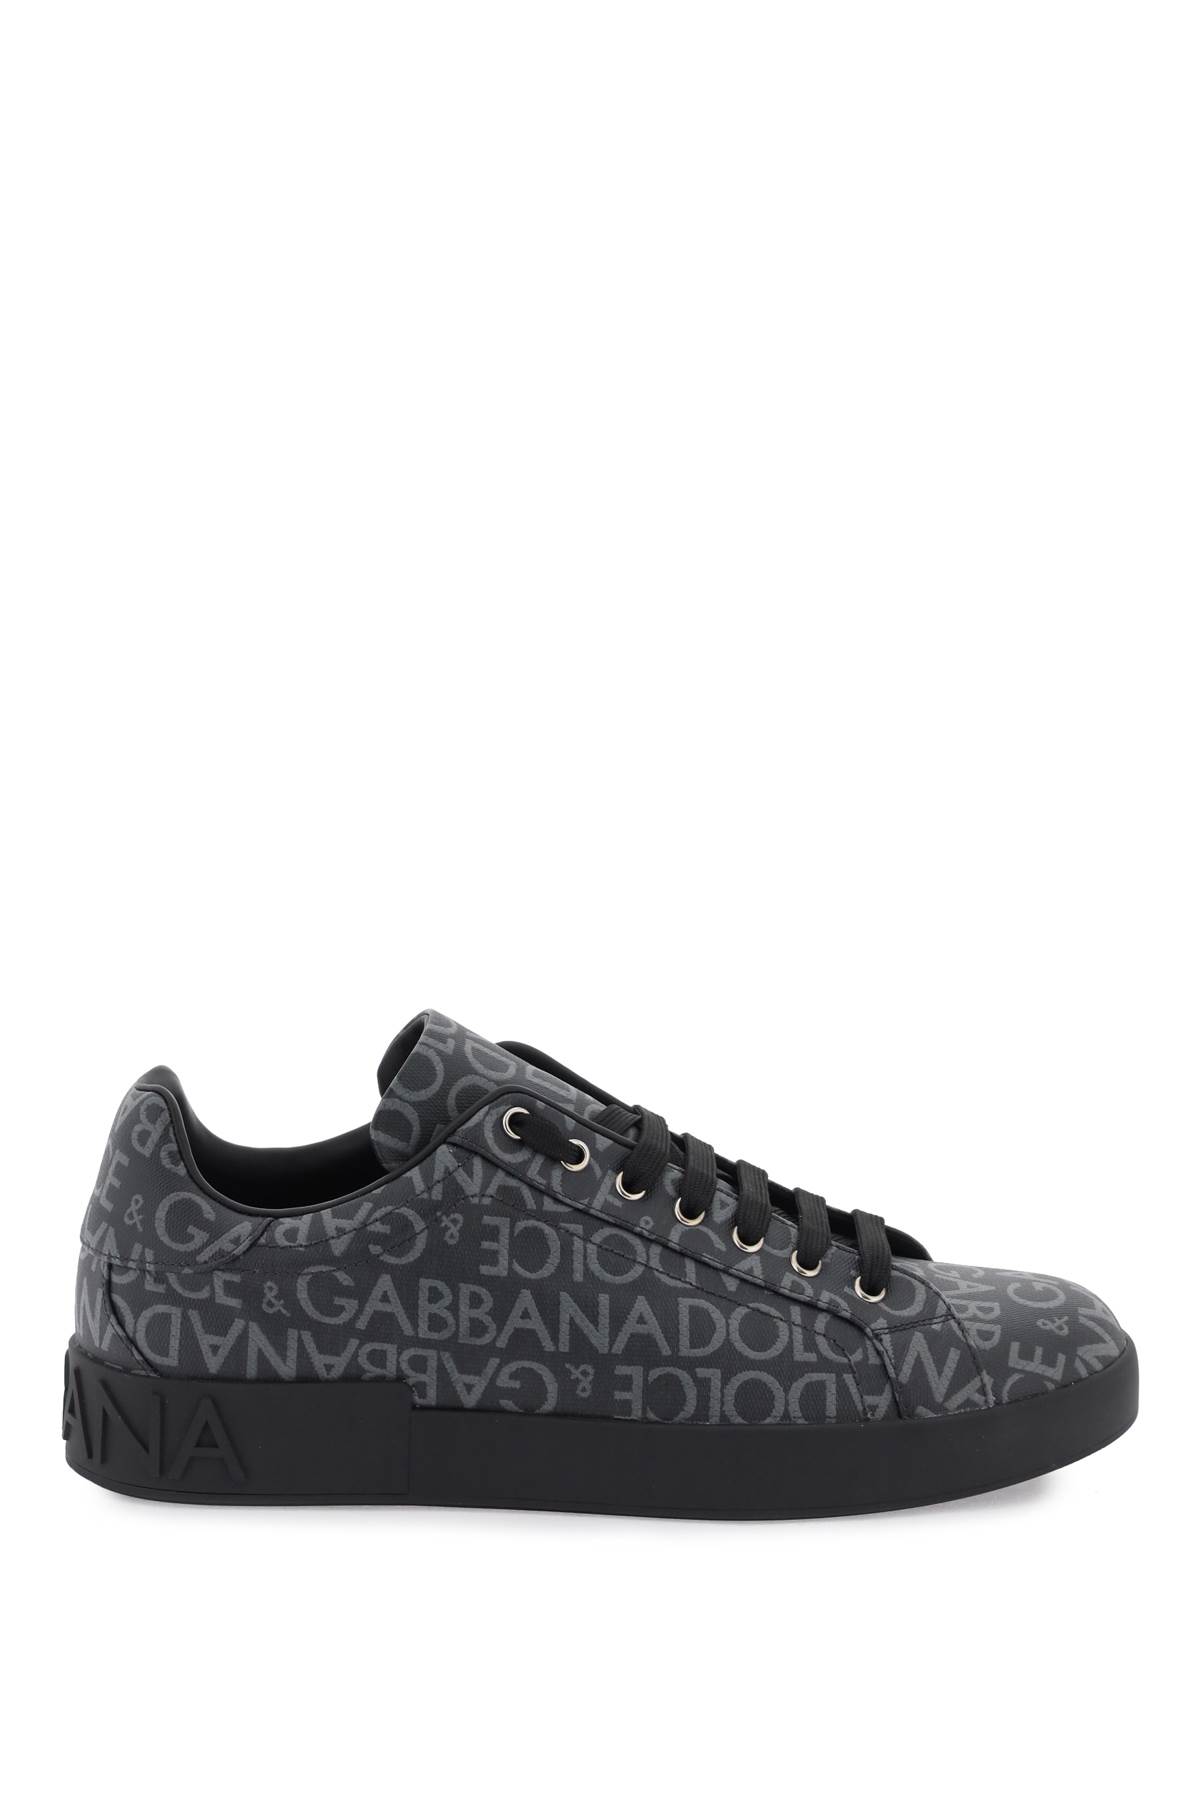 Shop Dolce & Gabbana Portofino Jacquard Sneakers In Nero/grigio